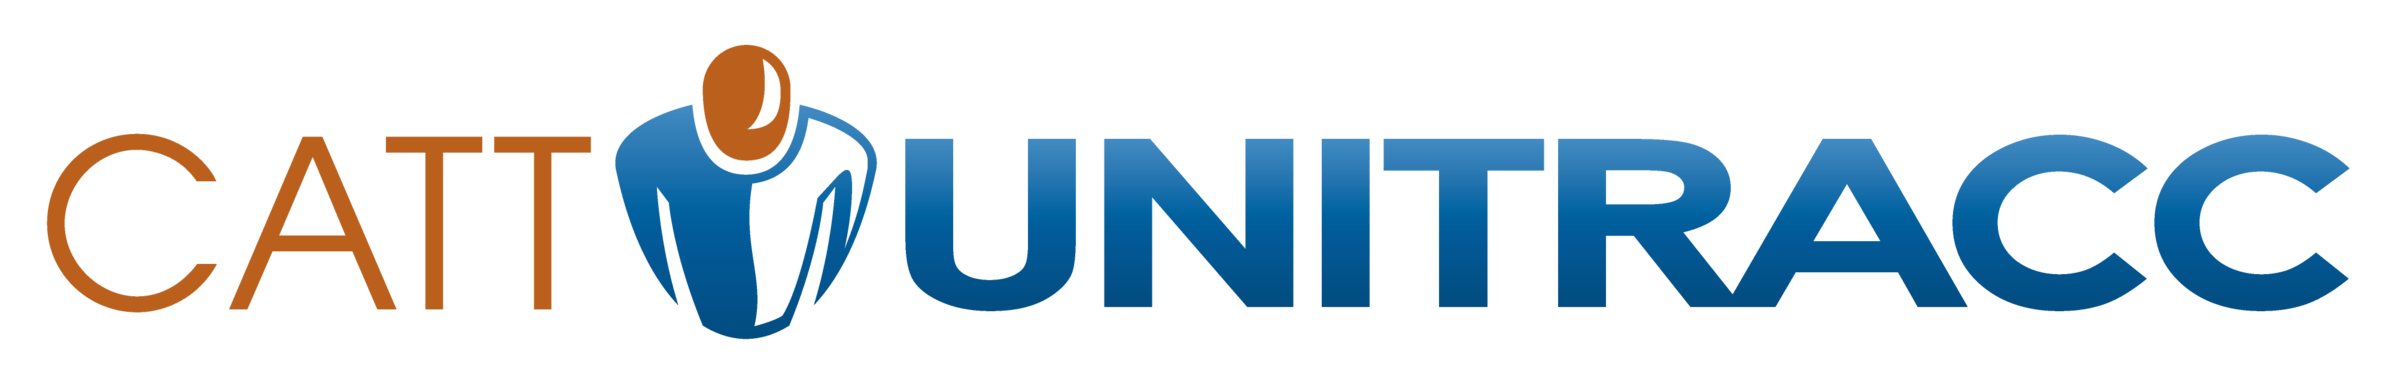 UNITRACC 2020